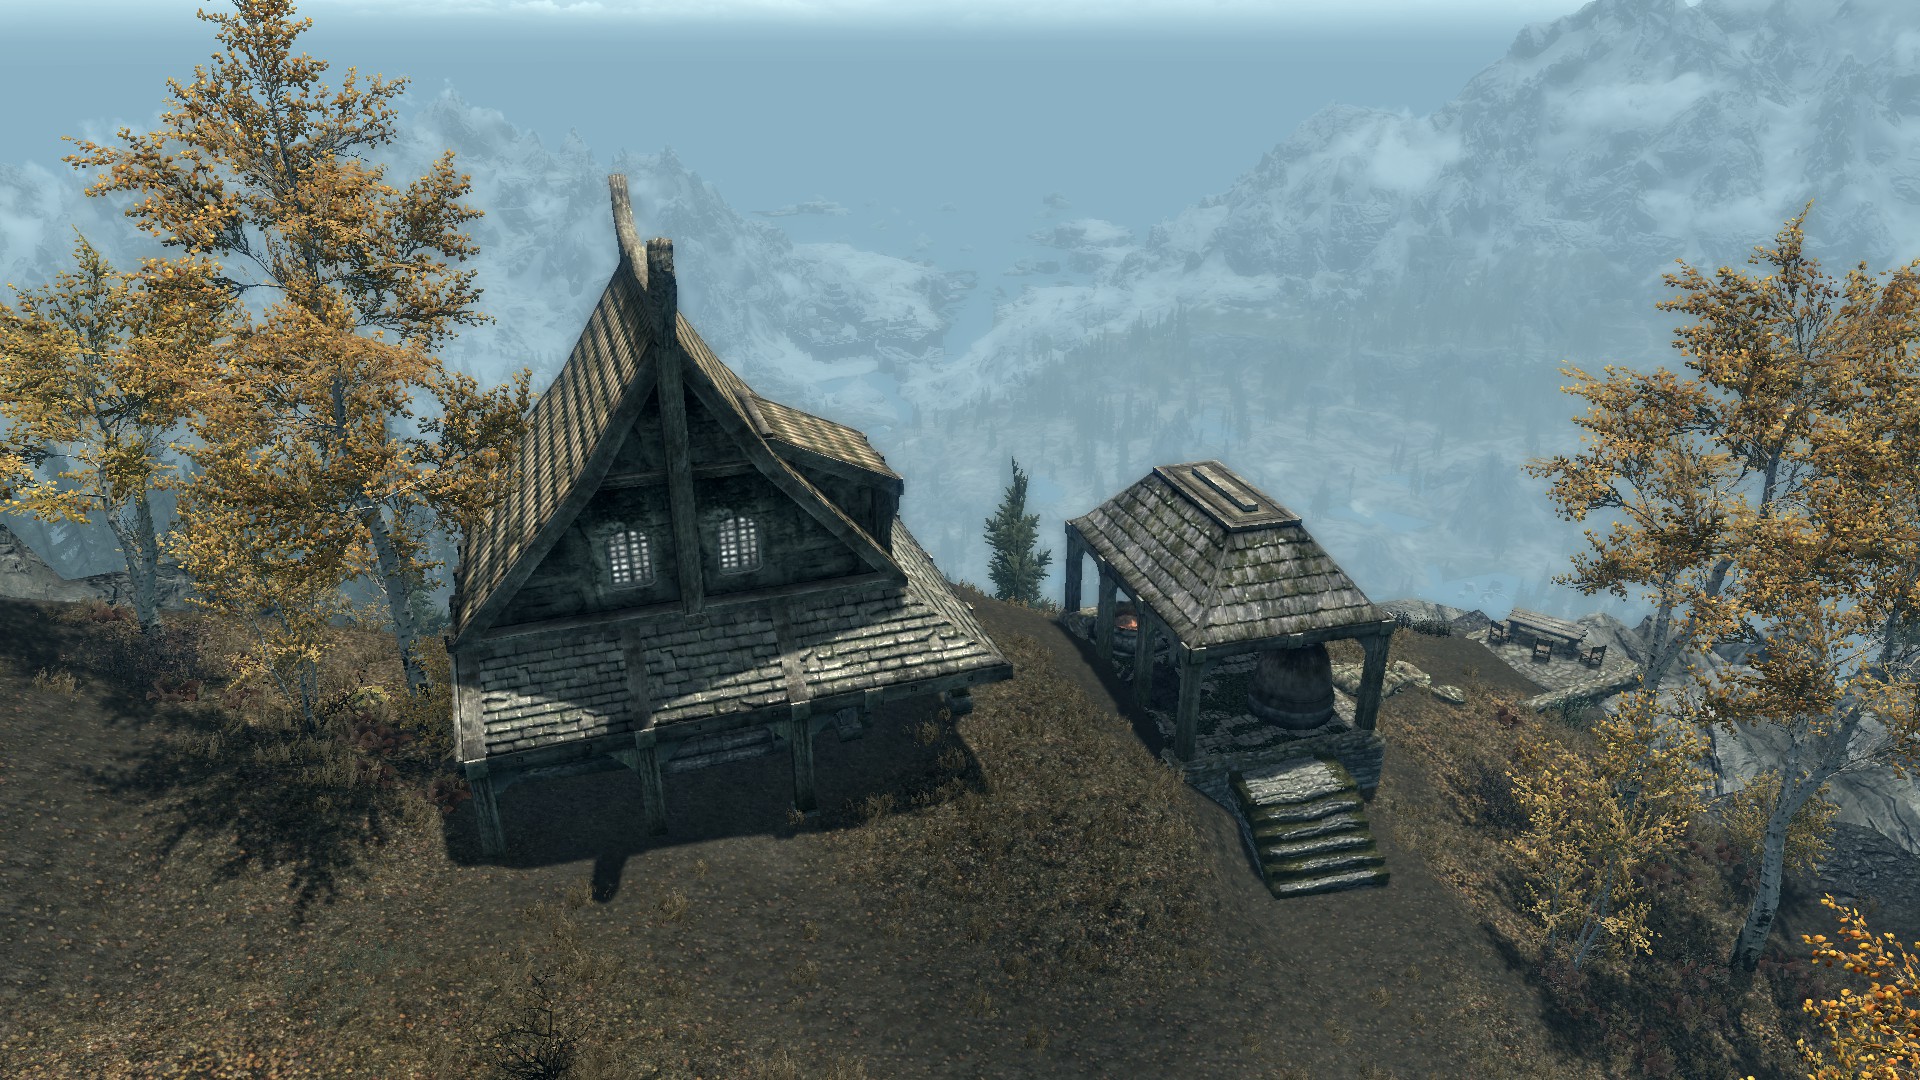 Skyrim Mods: New Small House Mods 